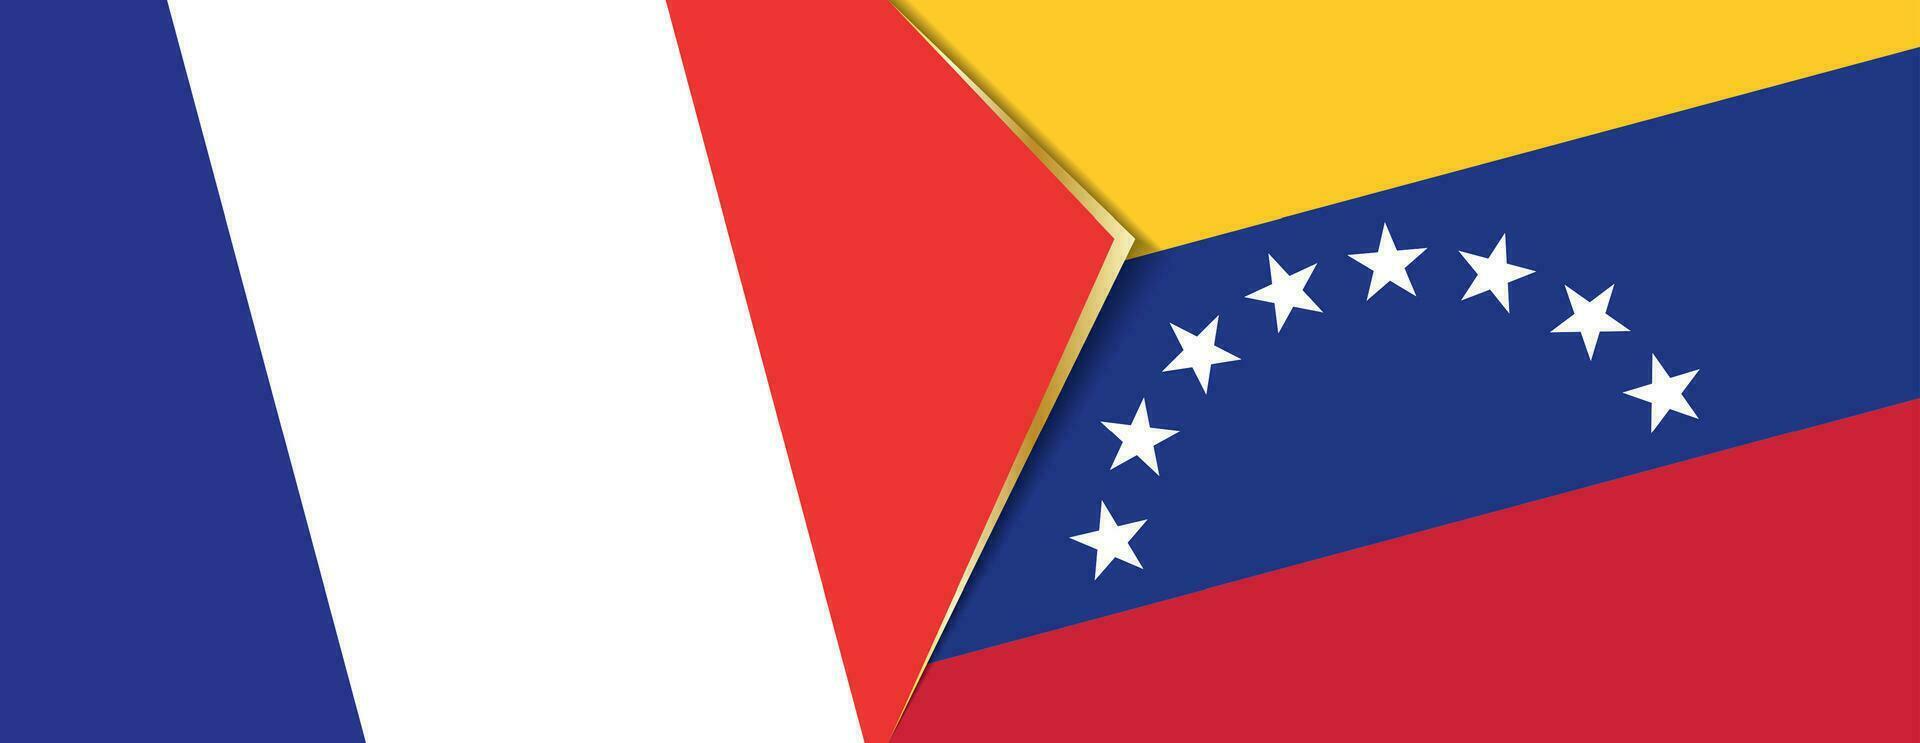 Francia y Venezuela banderas, dos vector banderas